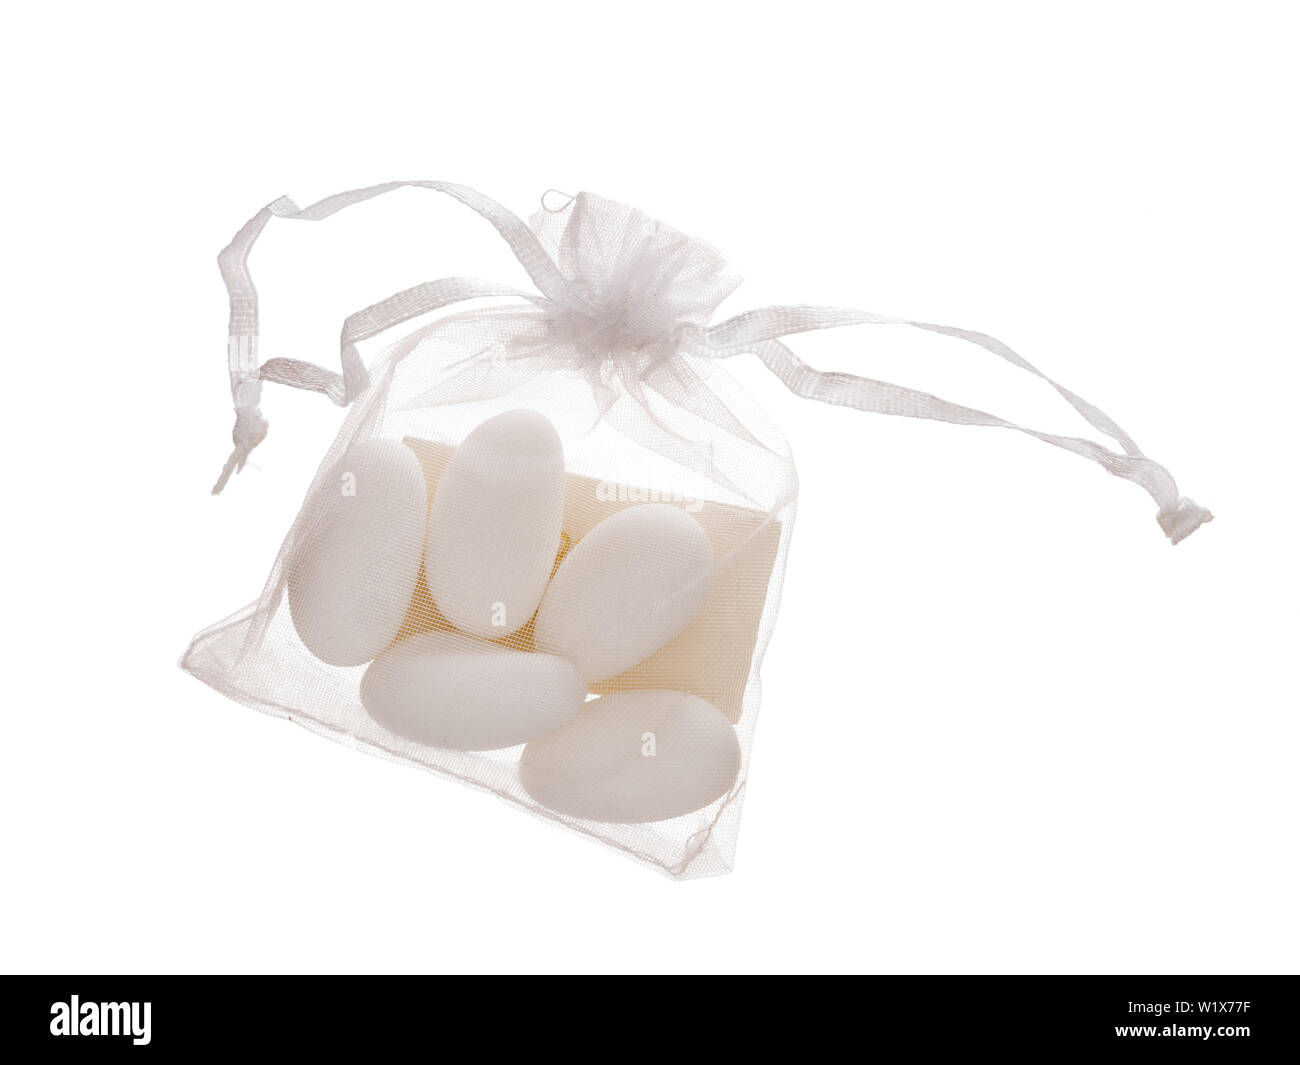 Bomboniere contenuti, 5 confetti in borsa con nota, tradizionalmente dato come bomboniera, regalo in Italia e chiamato coriandoli. Isolato su bianco. Foto Stock